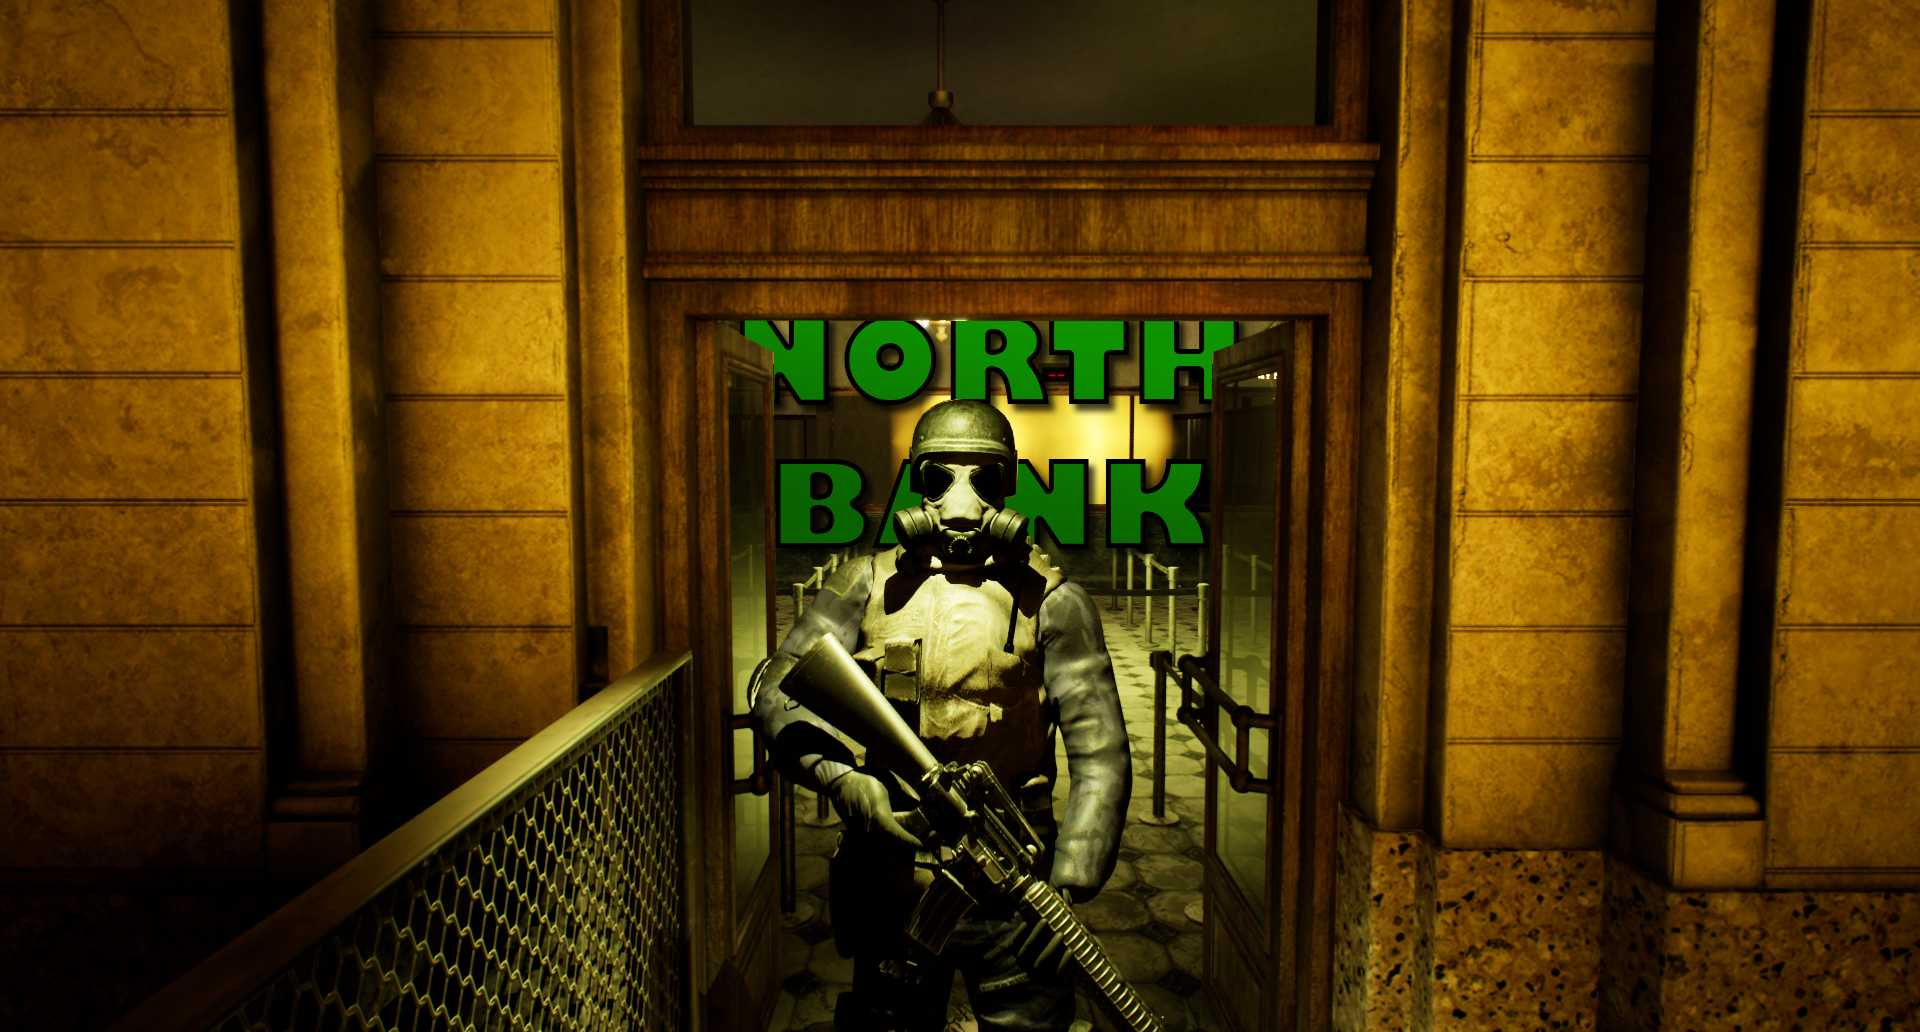 North Bank